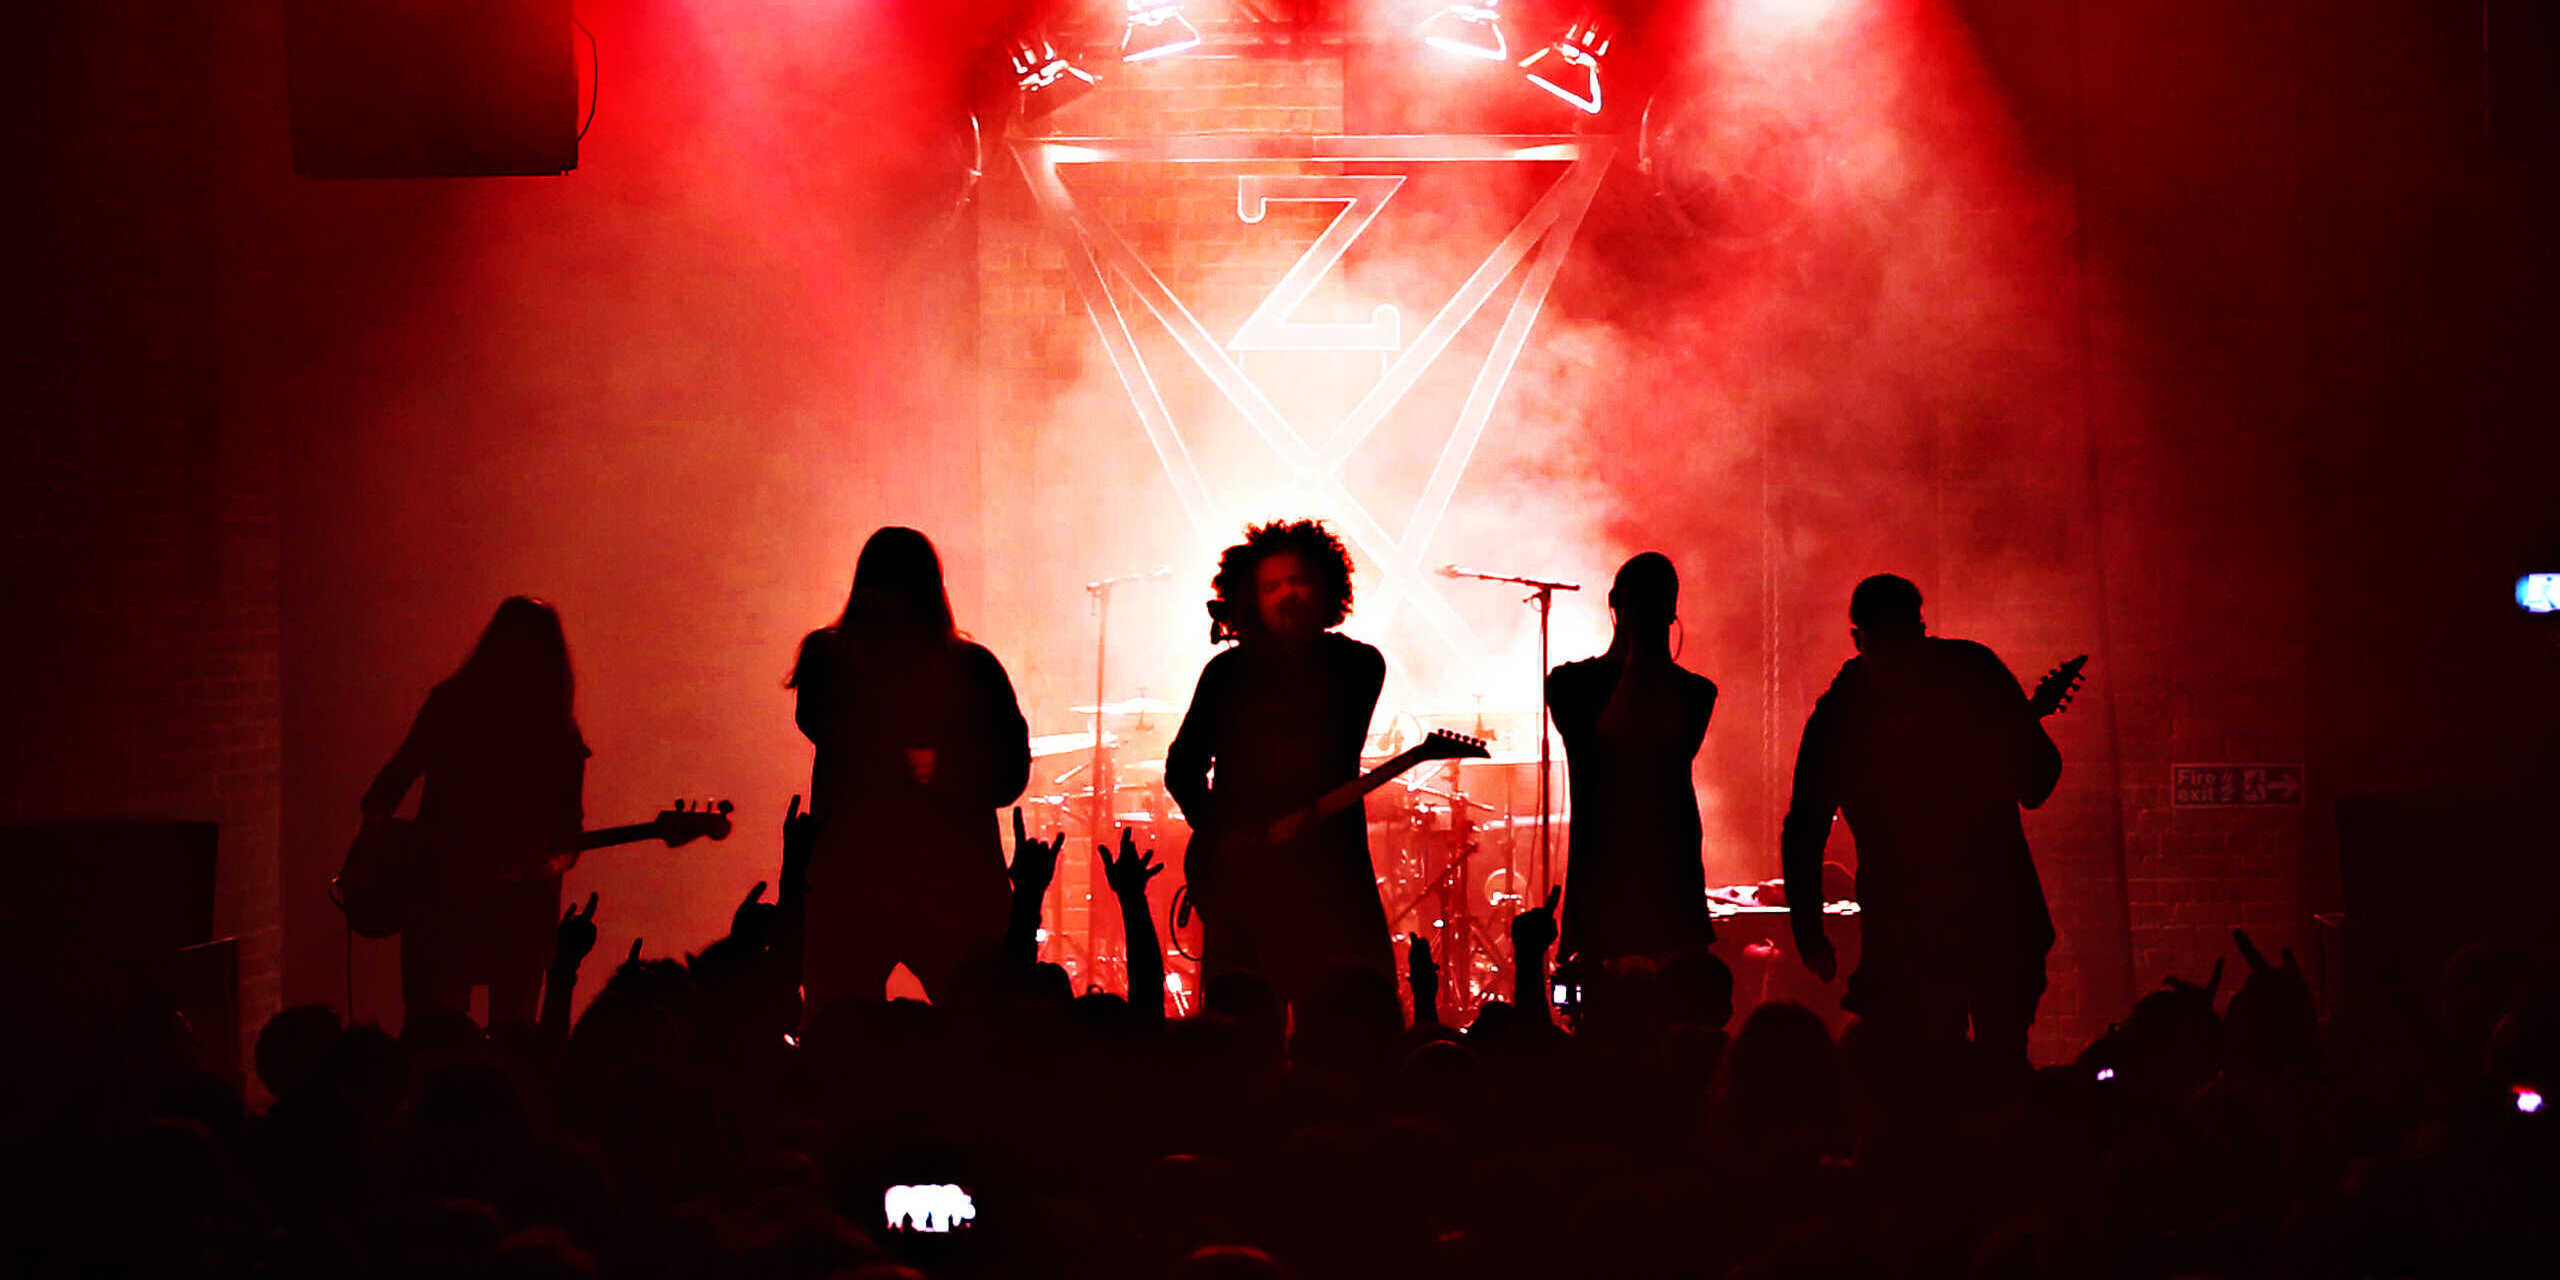 Eine fünfköpfige Metal-Band auf der Bühne, alles ist in rotes Licht getaucht